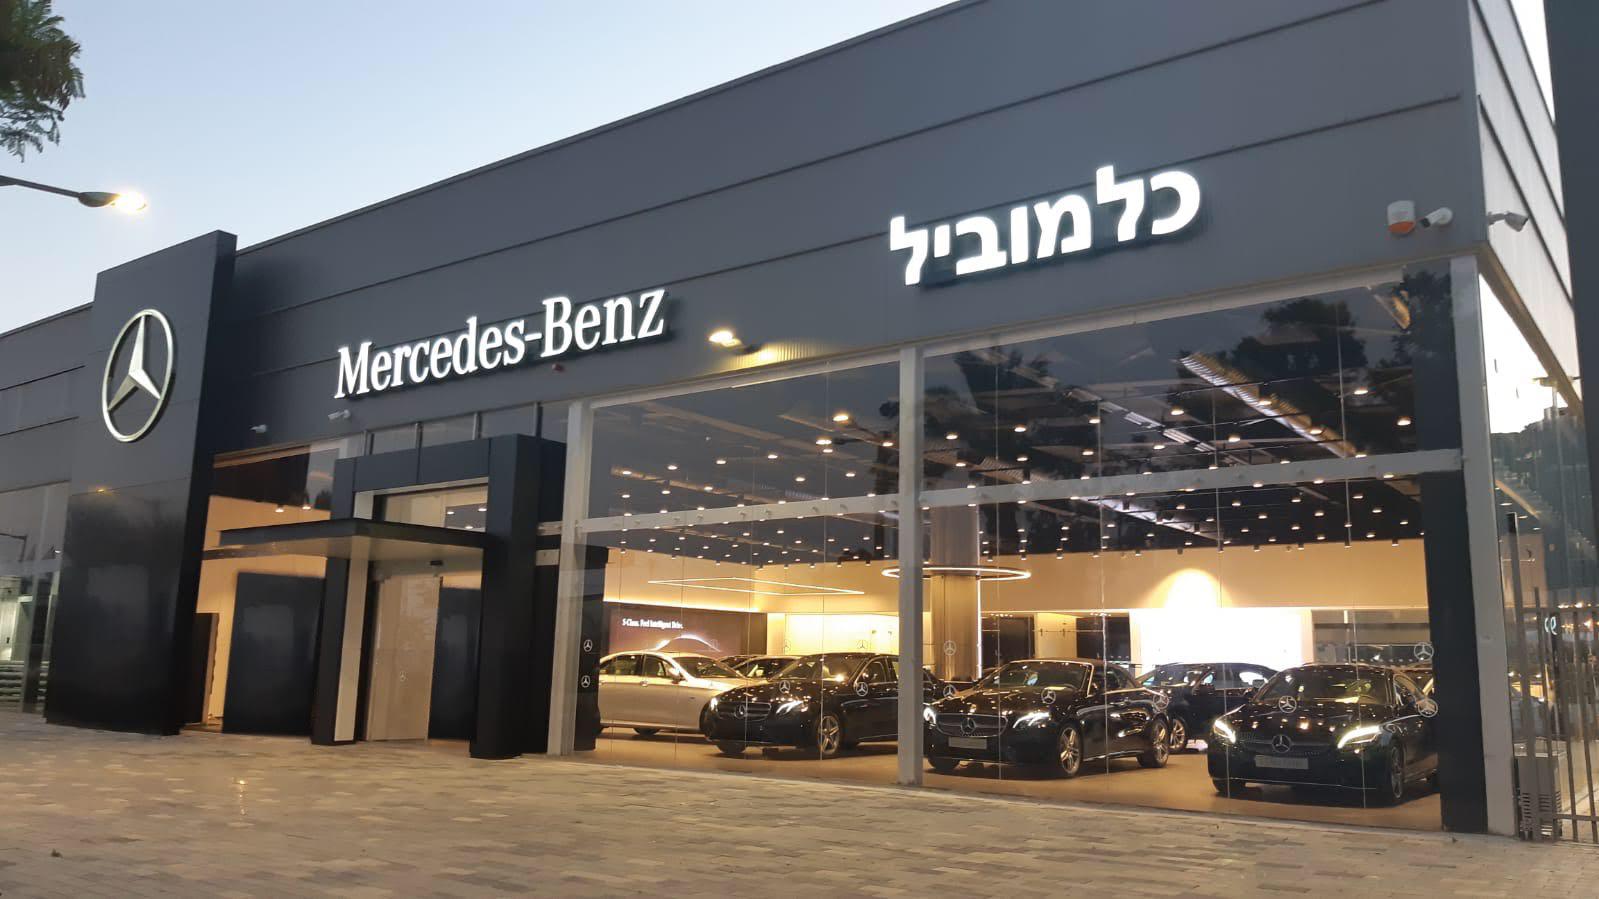 האולם החדש והמתקדם ביותר של מרצדס בישראל נפתח בבאר שבע